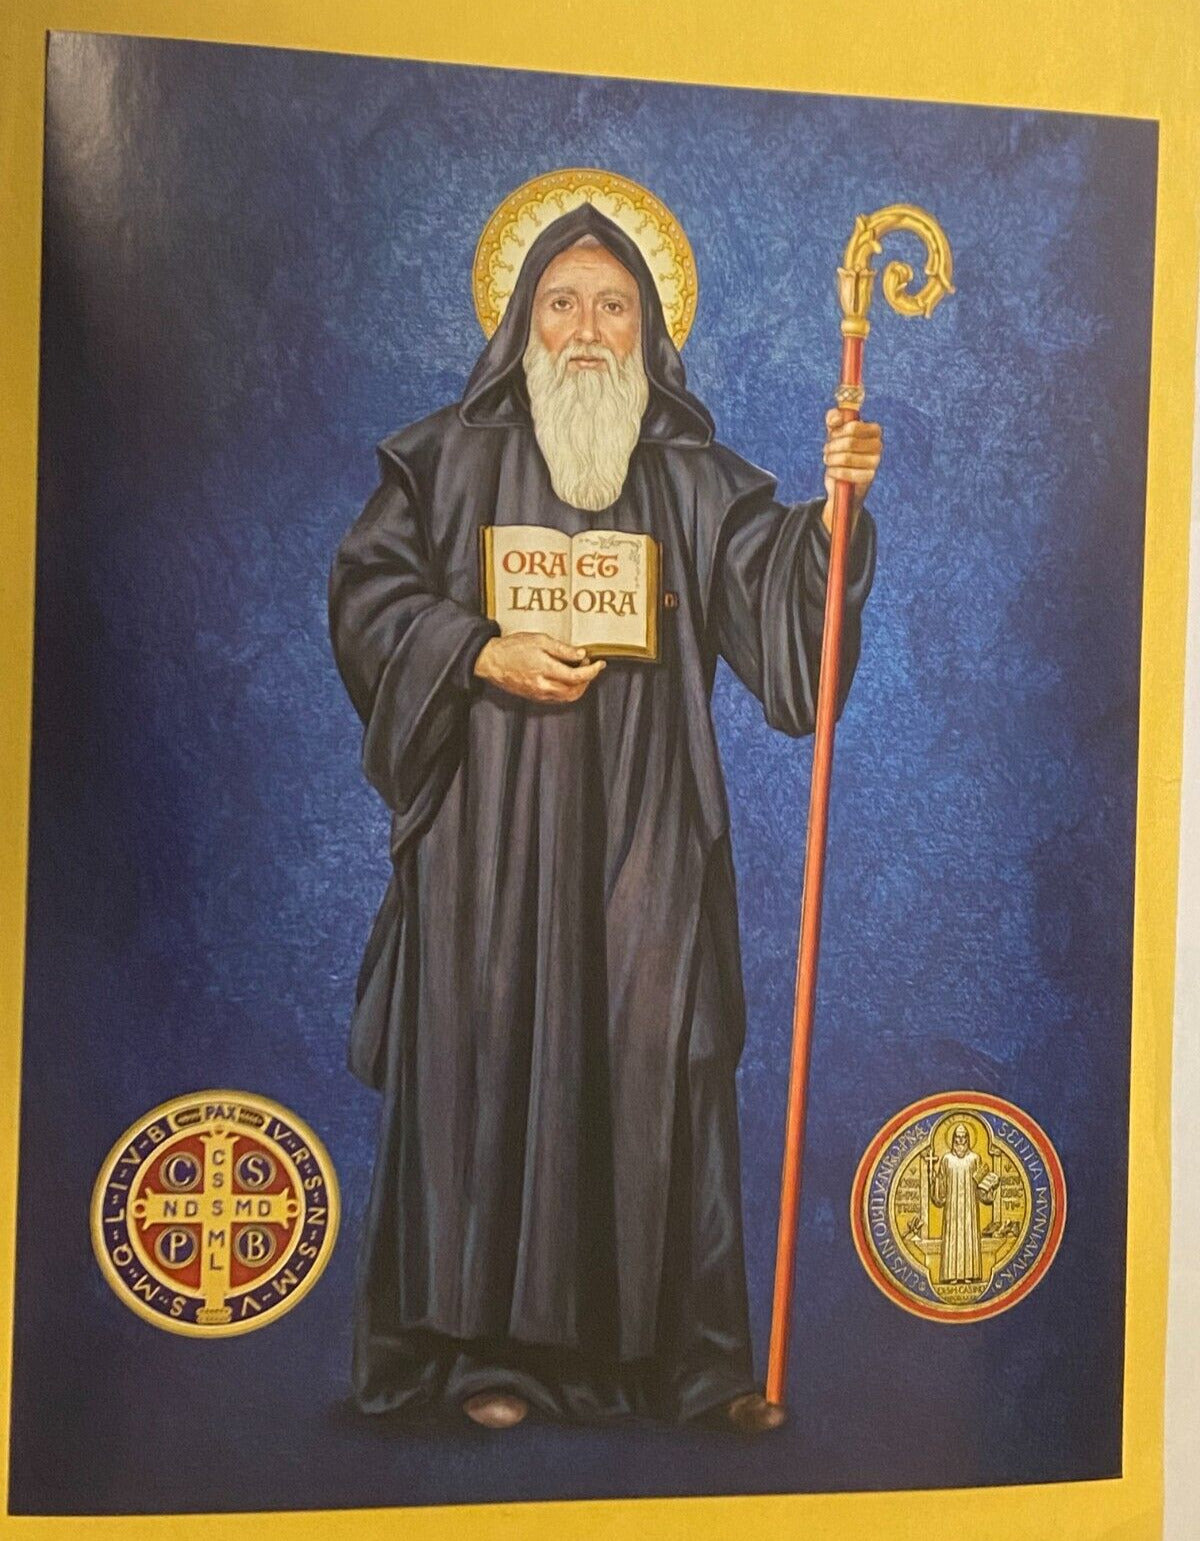 Saint Benedict 8x10" Print, New